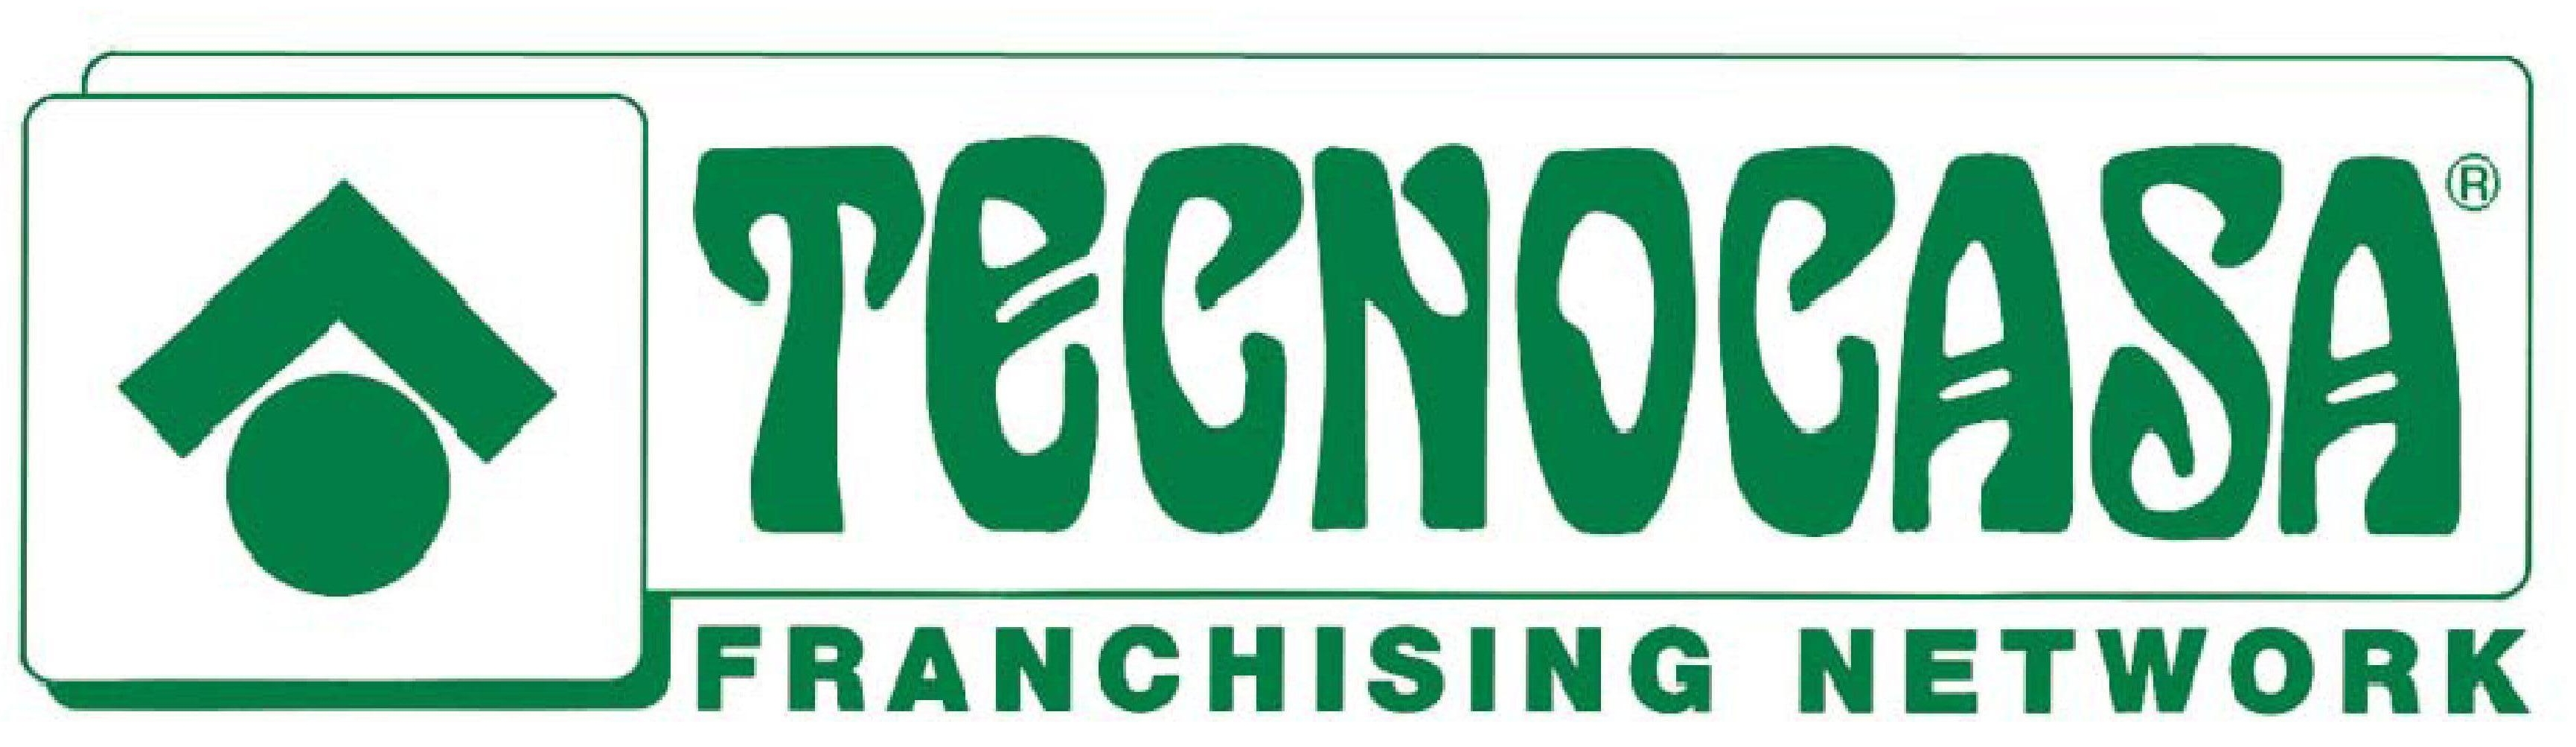 tecnocasa Logo photo - 1